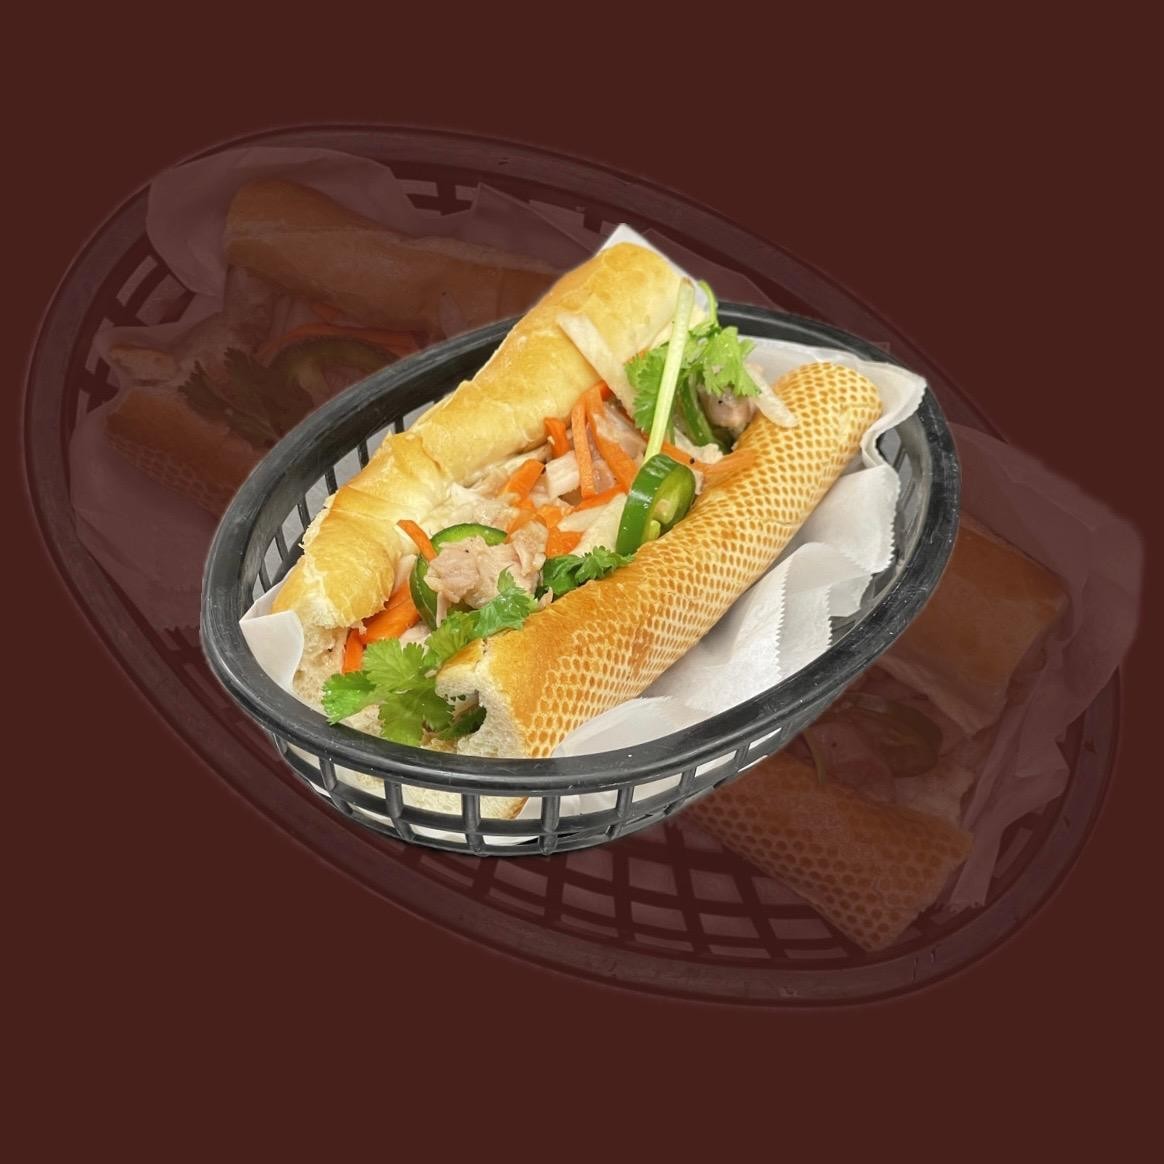 Kristie's Vietnamese Sandwich (Banh Mi)